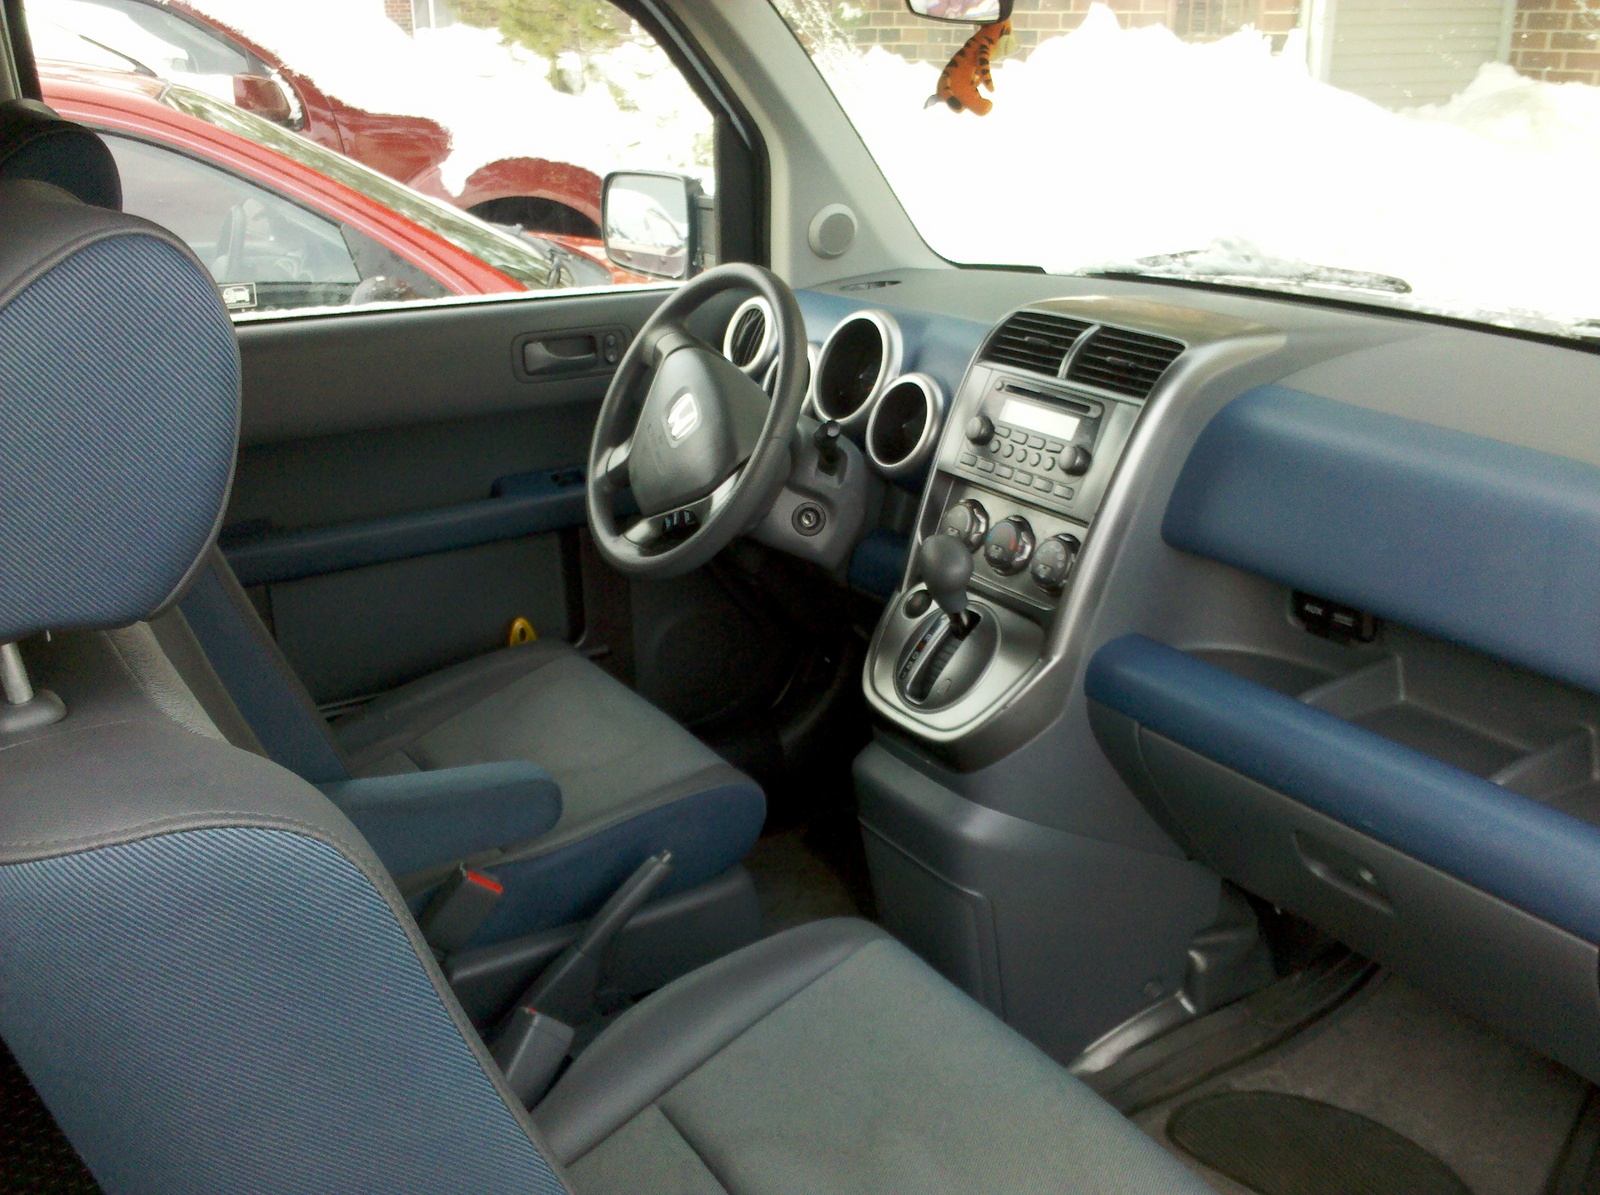 2003 Honda Element - Interior Pictures - CarGurus